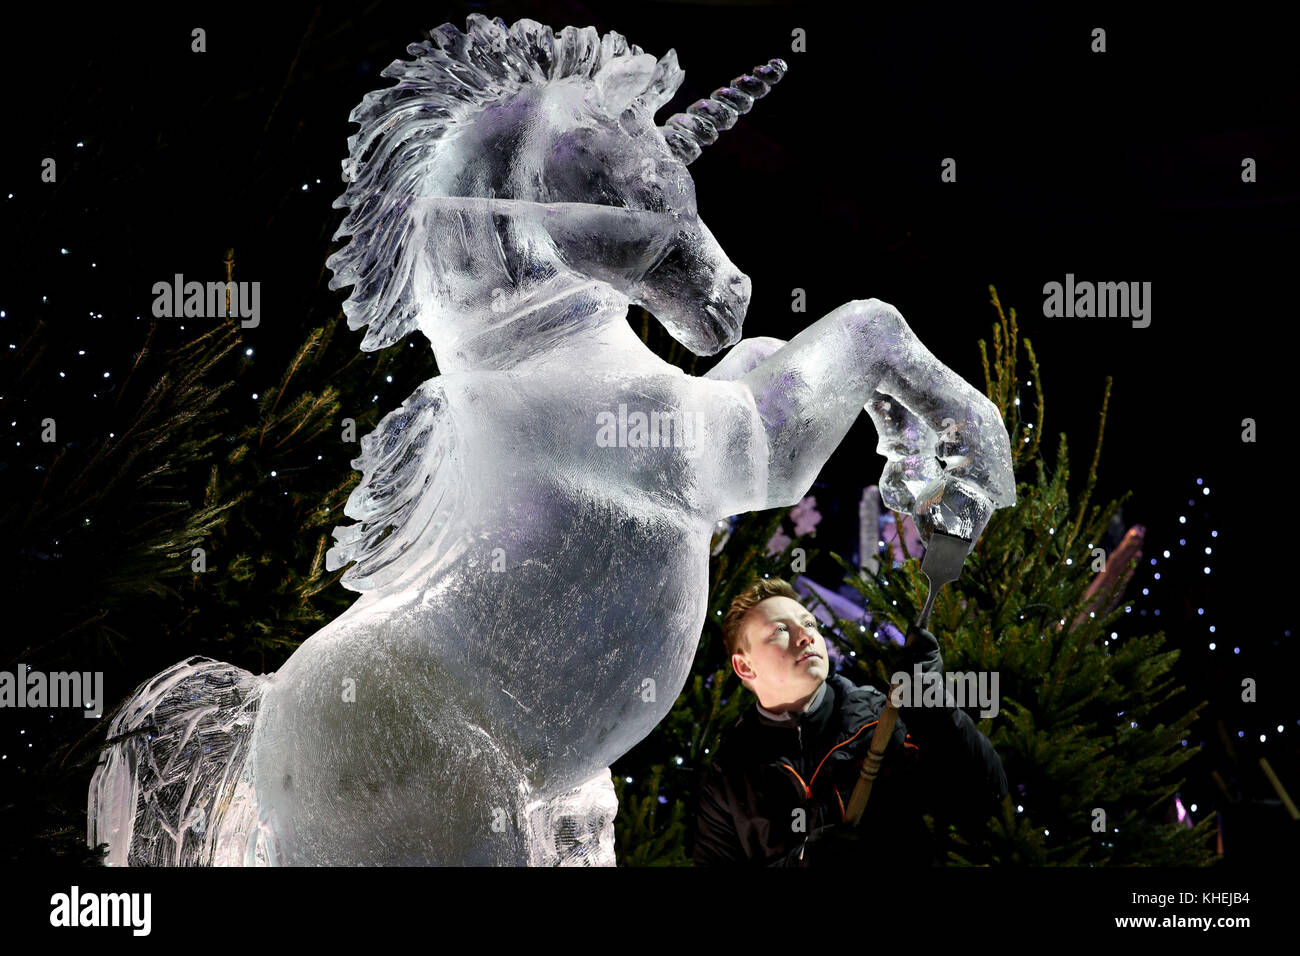 Maestro scultore di ghiaccio jack hackney mette i tocchi di rifinitura per una scultura di ghiaccio di un unicorno, che fa parte della prossima mostra il ghiaccio avventura: un viaggio attraverso la Scozia congelati in George Street, Edimburgo. Foto Stock